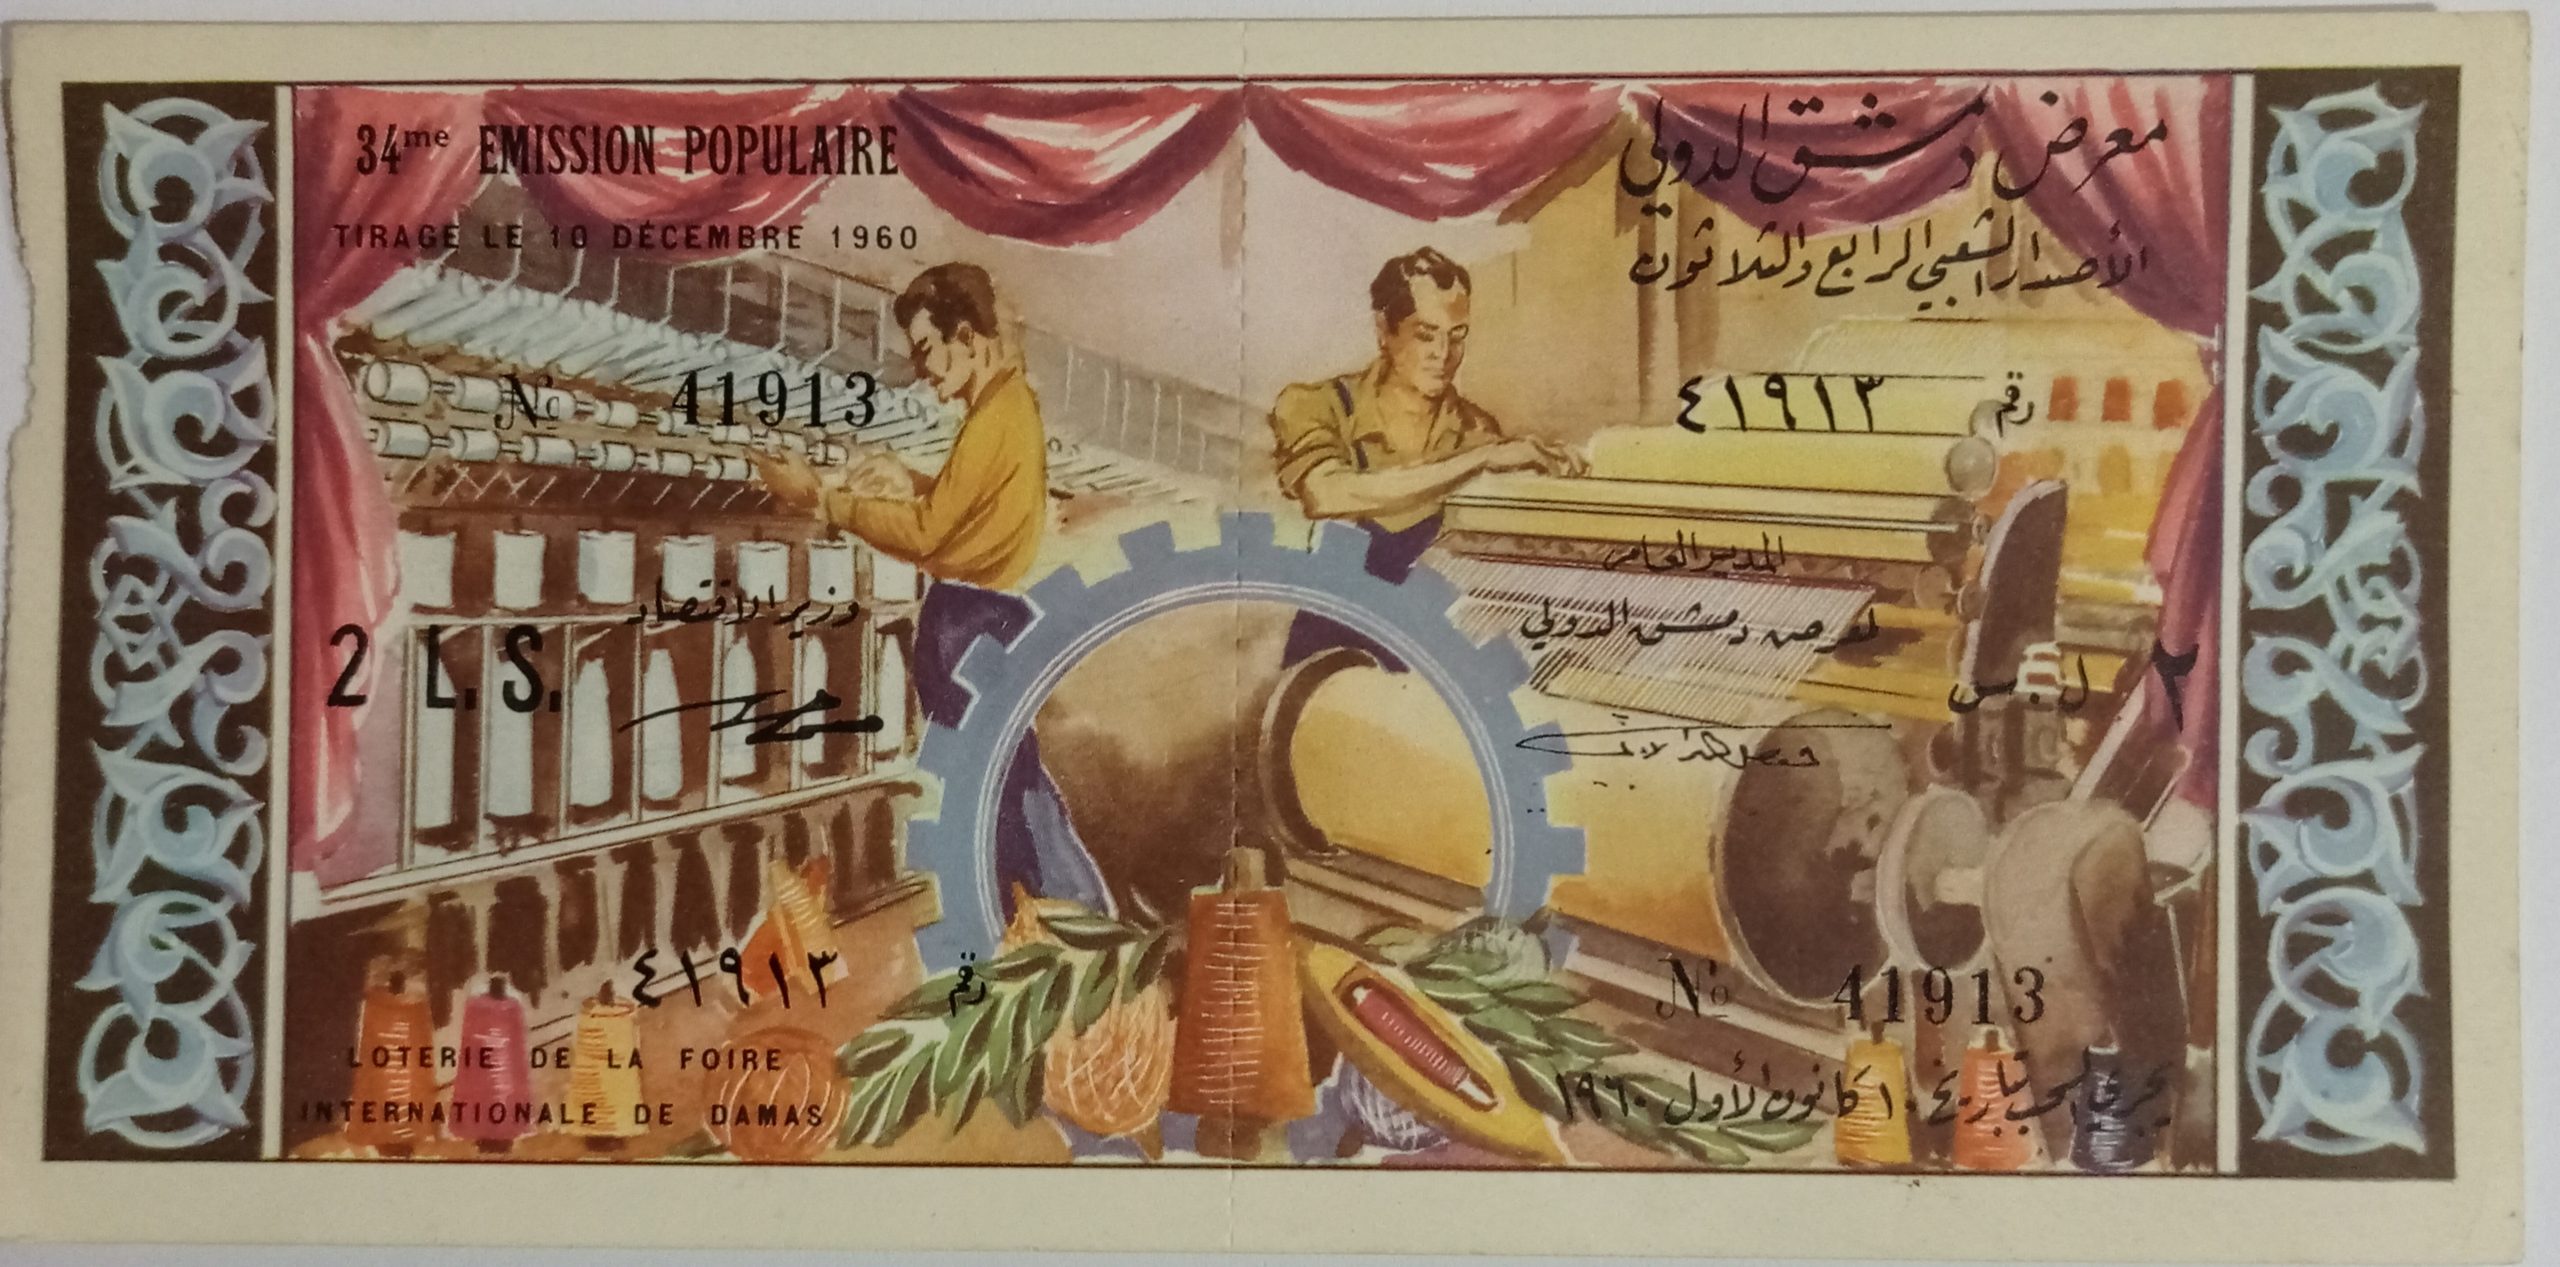 التاريخ السوري المعاصر - يانصيب معرض دمشق الدولي - الإصدار الشعبي الرابع و الثلاثون عام 1960